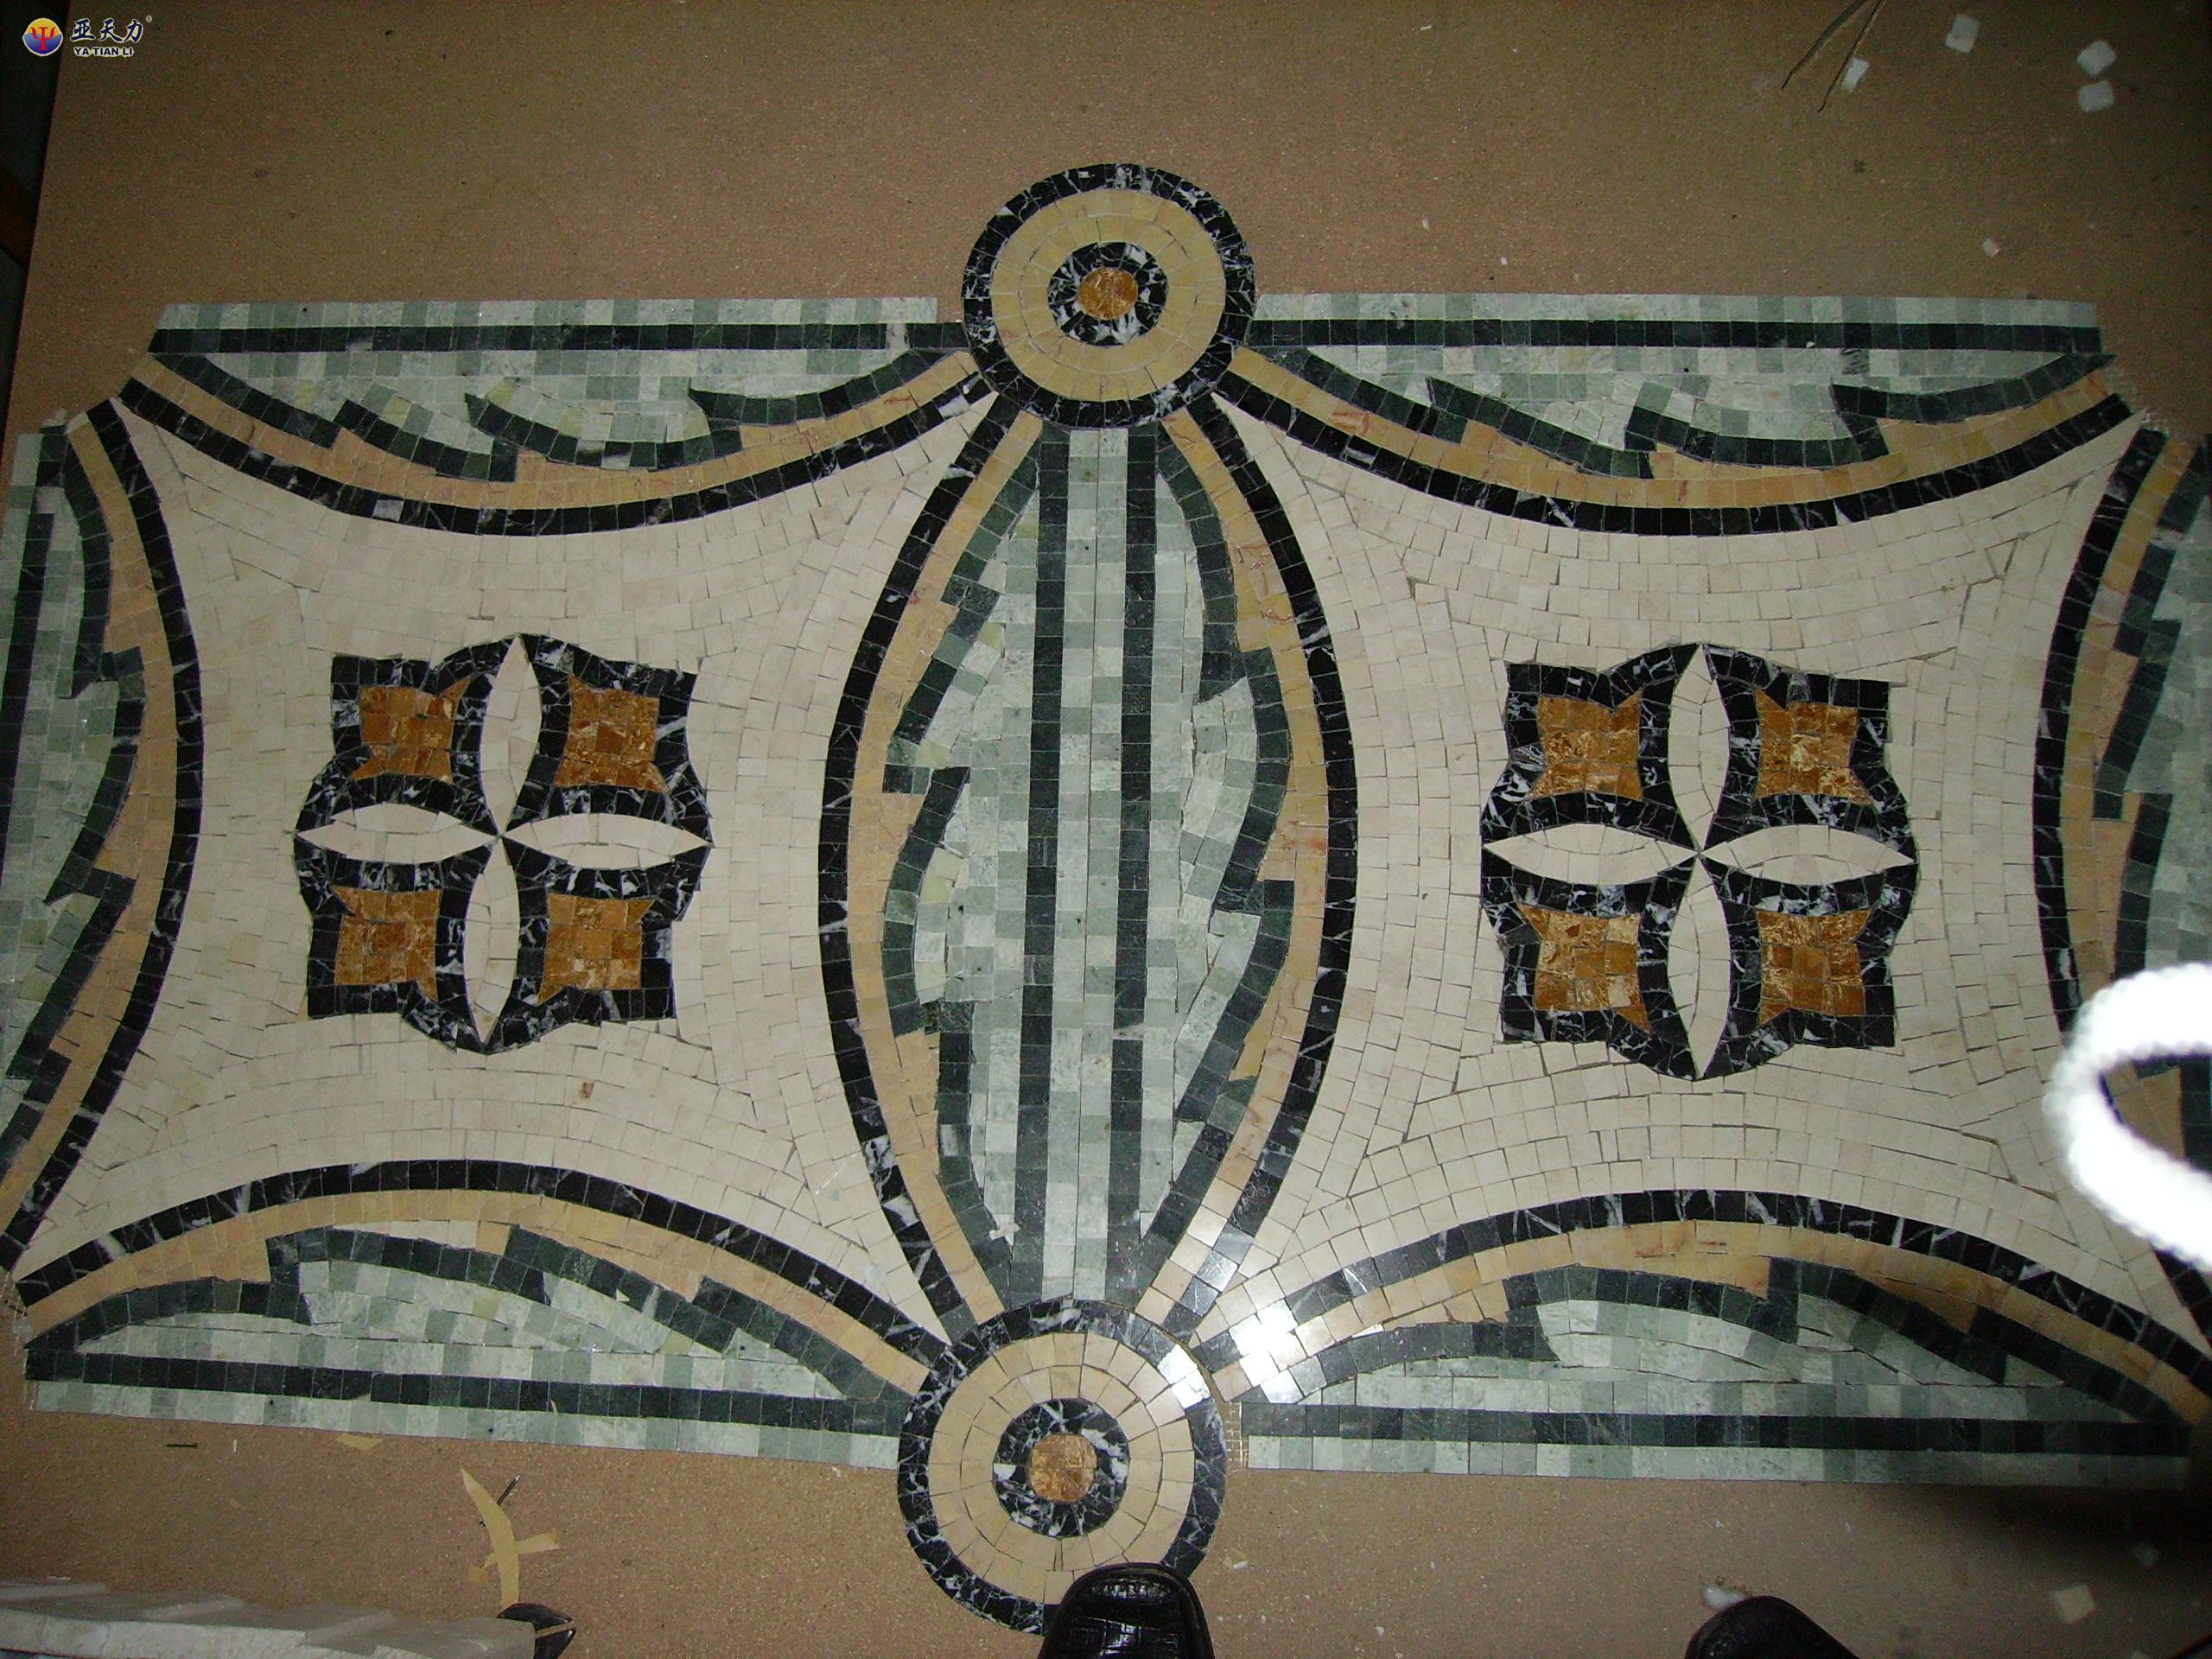 Stone Mosaic Art